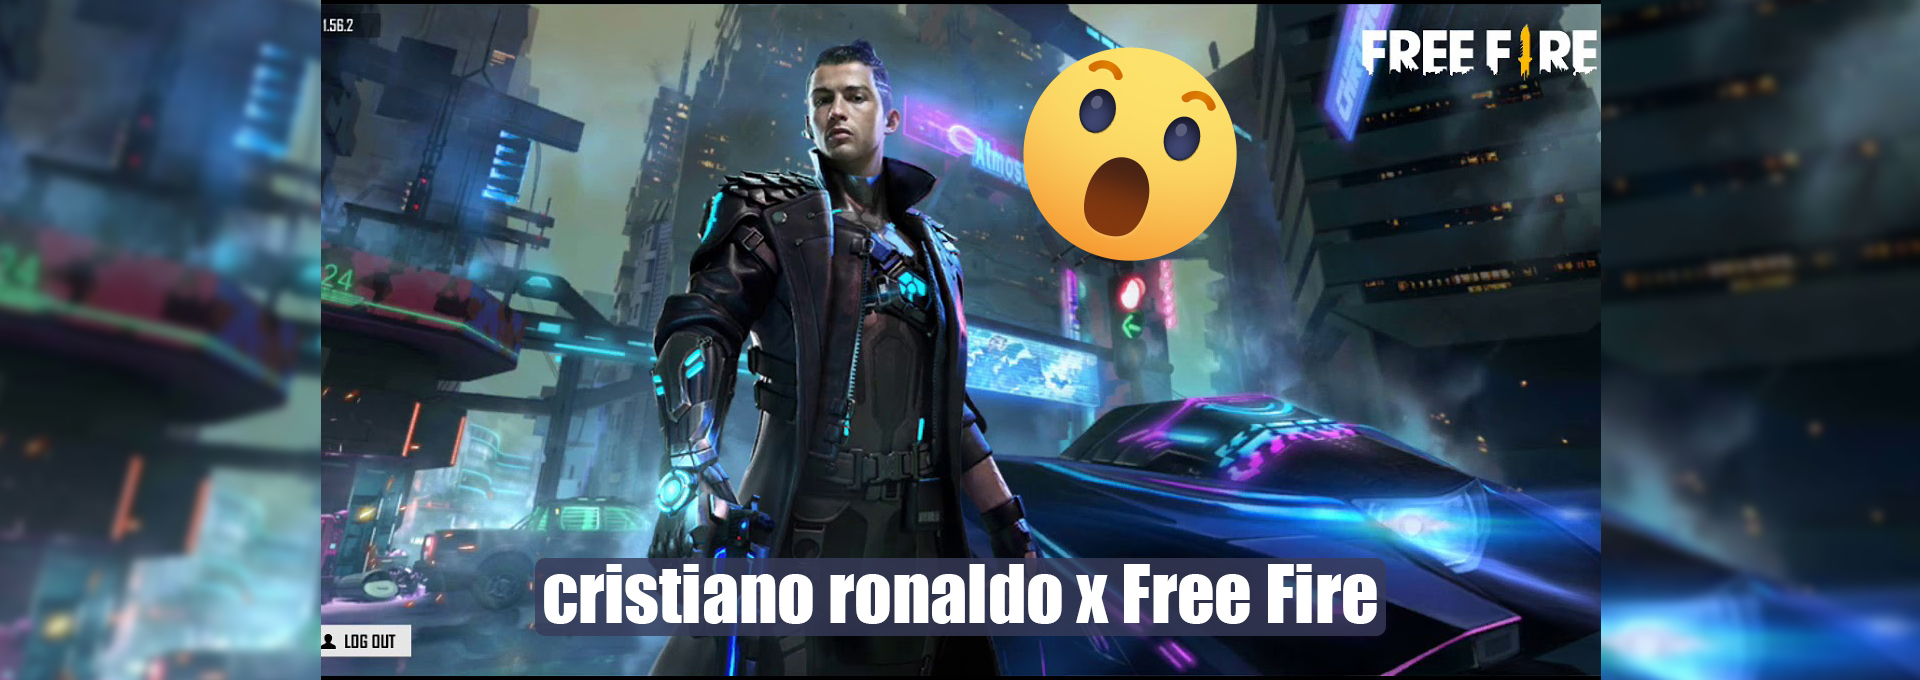 Cristiano Ronaldo Free fire